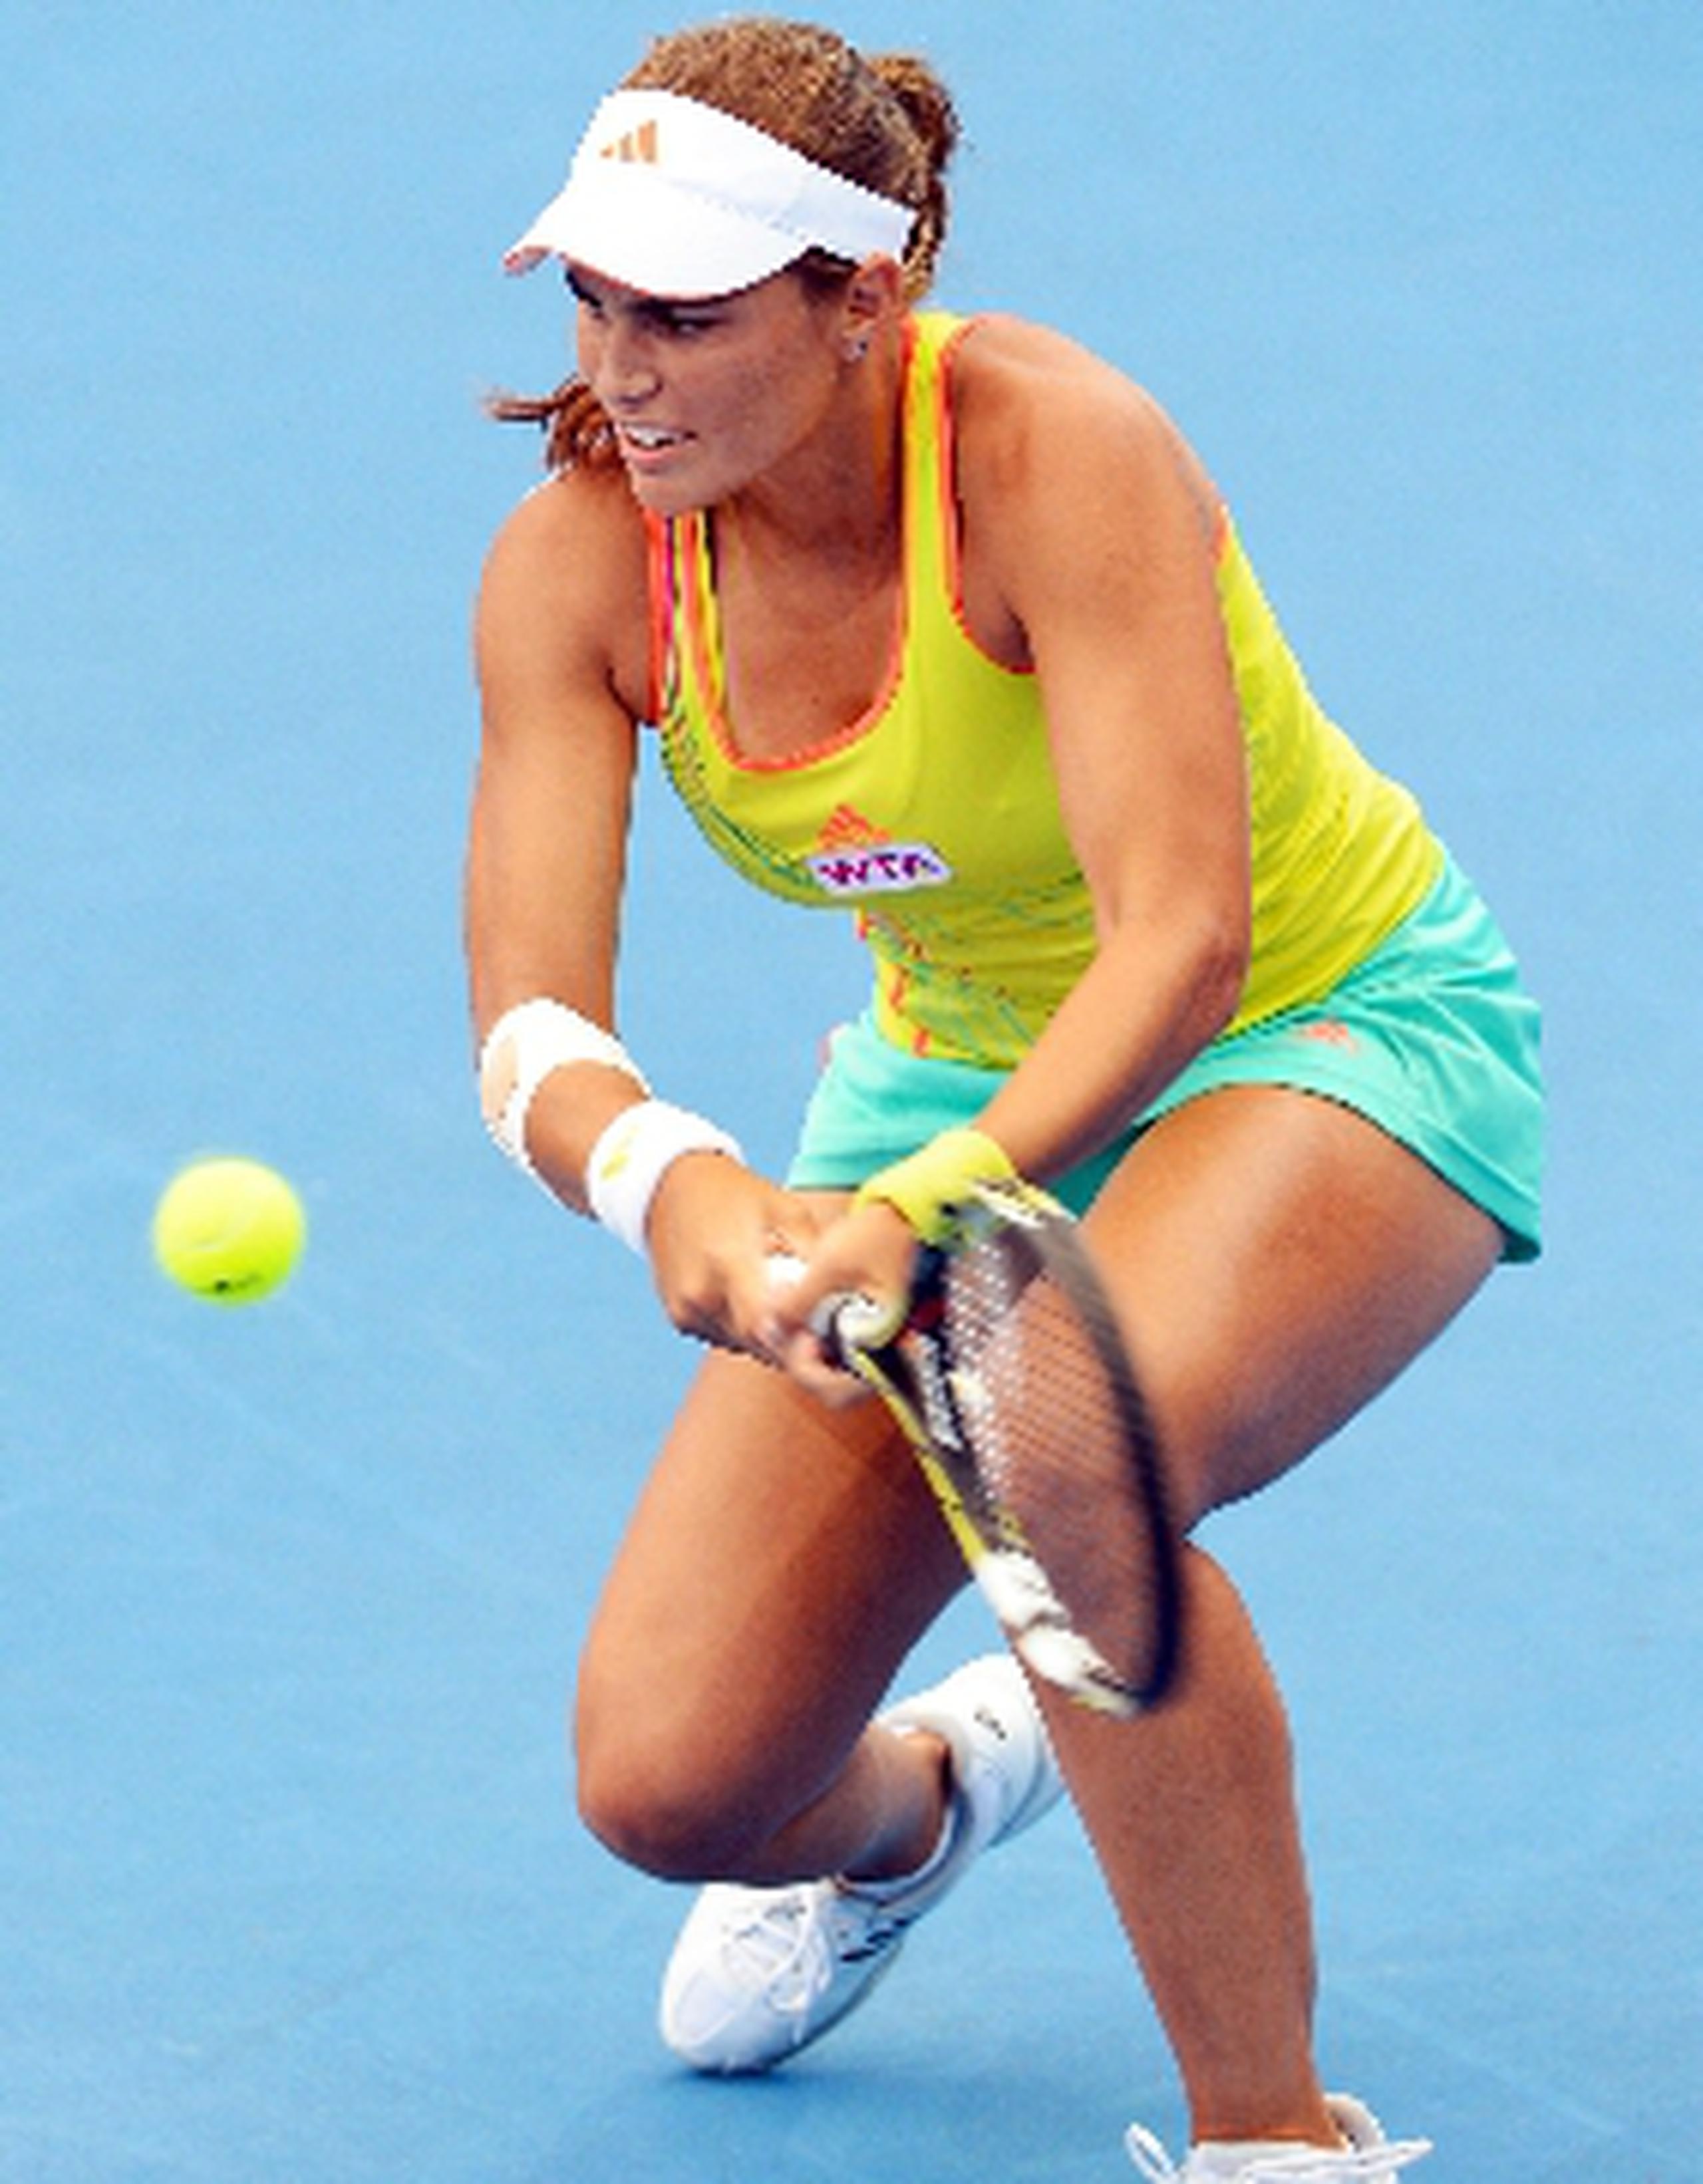 La tenista boricua Mónica Puig llega al Abierto  GDF SUEZ en París, Francia, en la posición 109 en el escalafón de la WTA.&nbsp;<font color="yellow">(Archivo)</font>